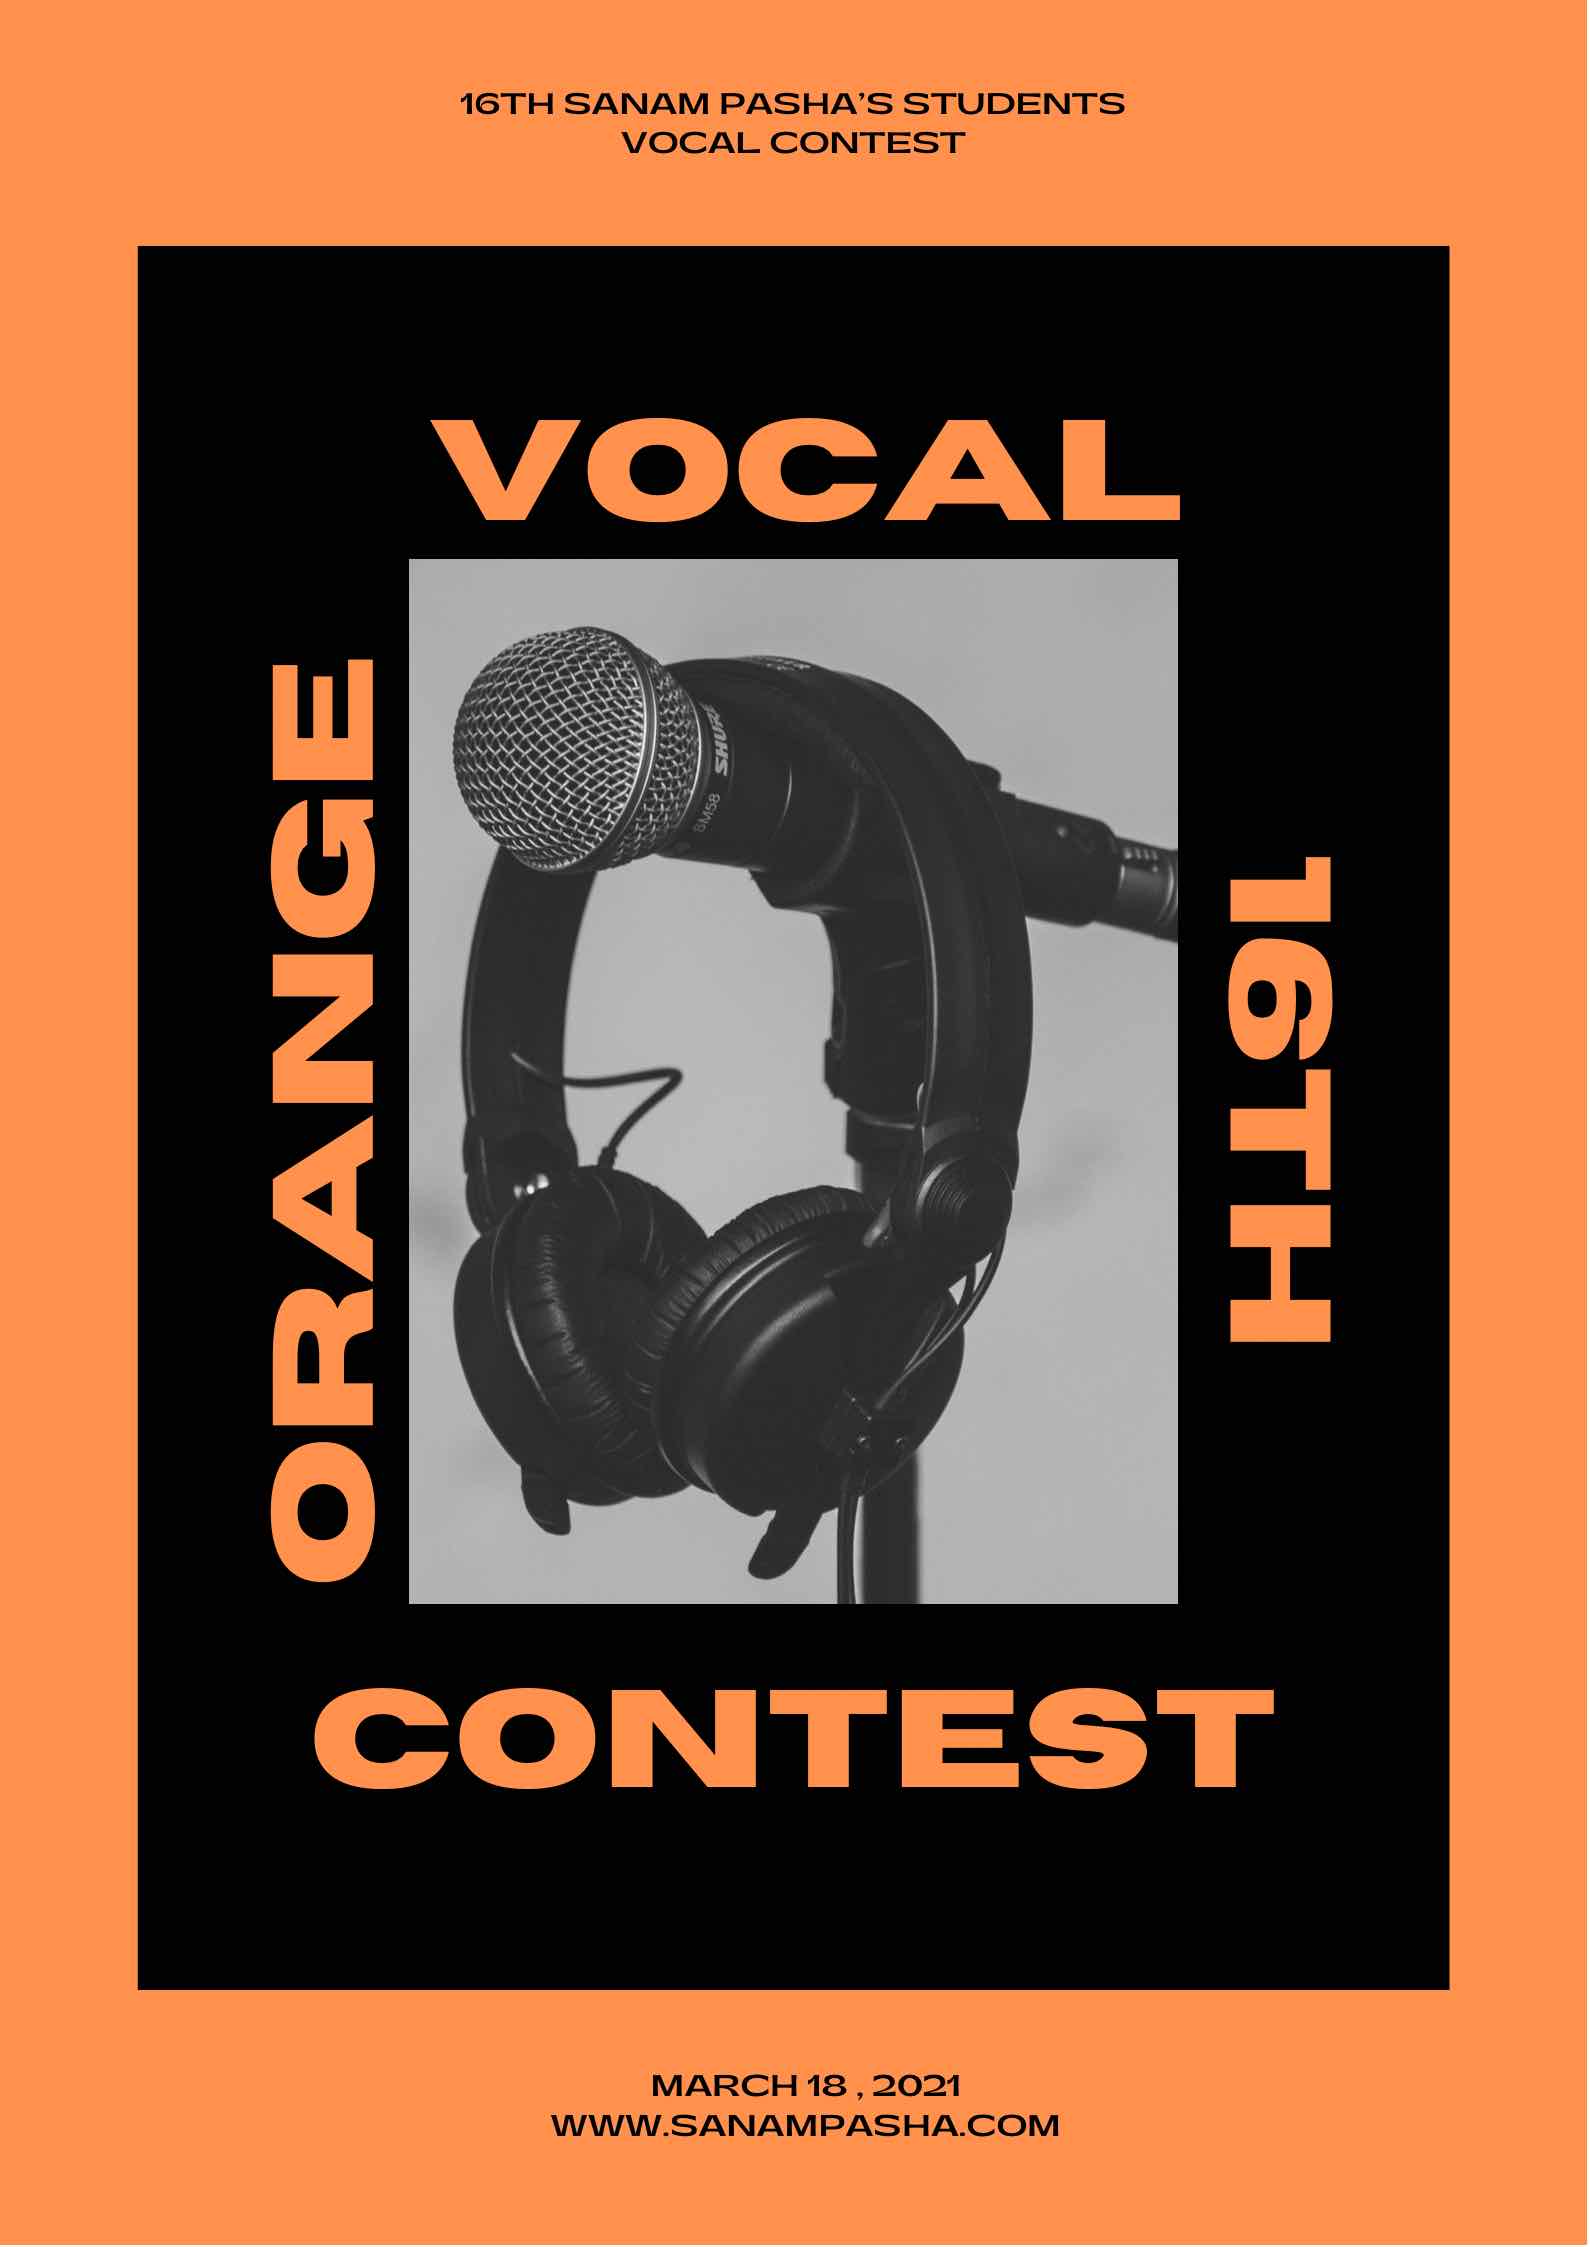 وکال کانتست - مسابقه خوانندگی -تجربه و مهارت -رقابت در گروه نارنجی